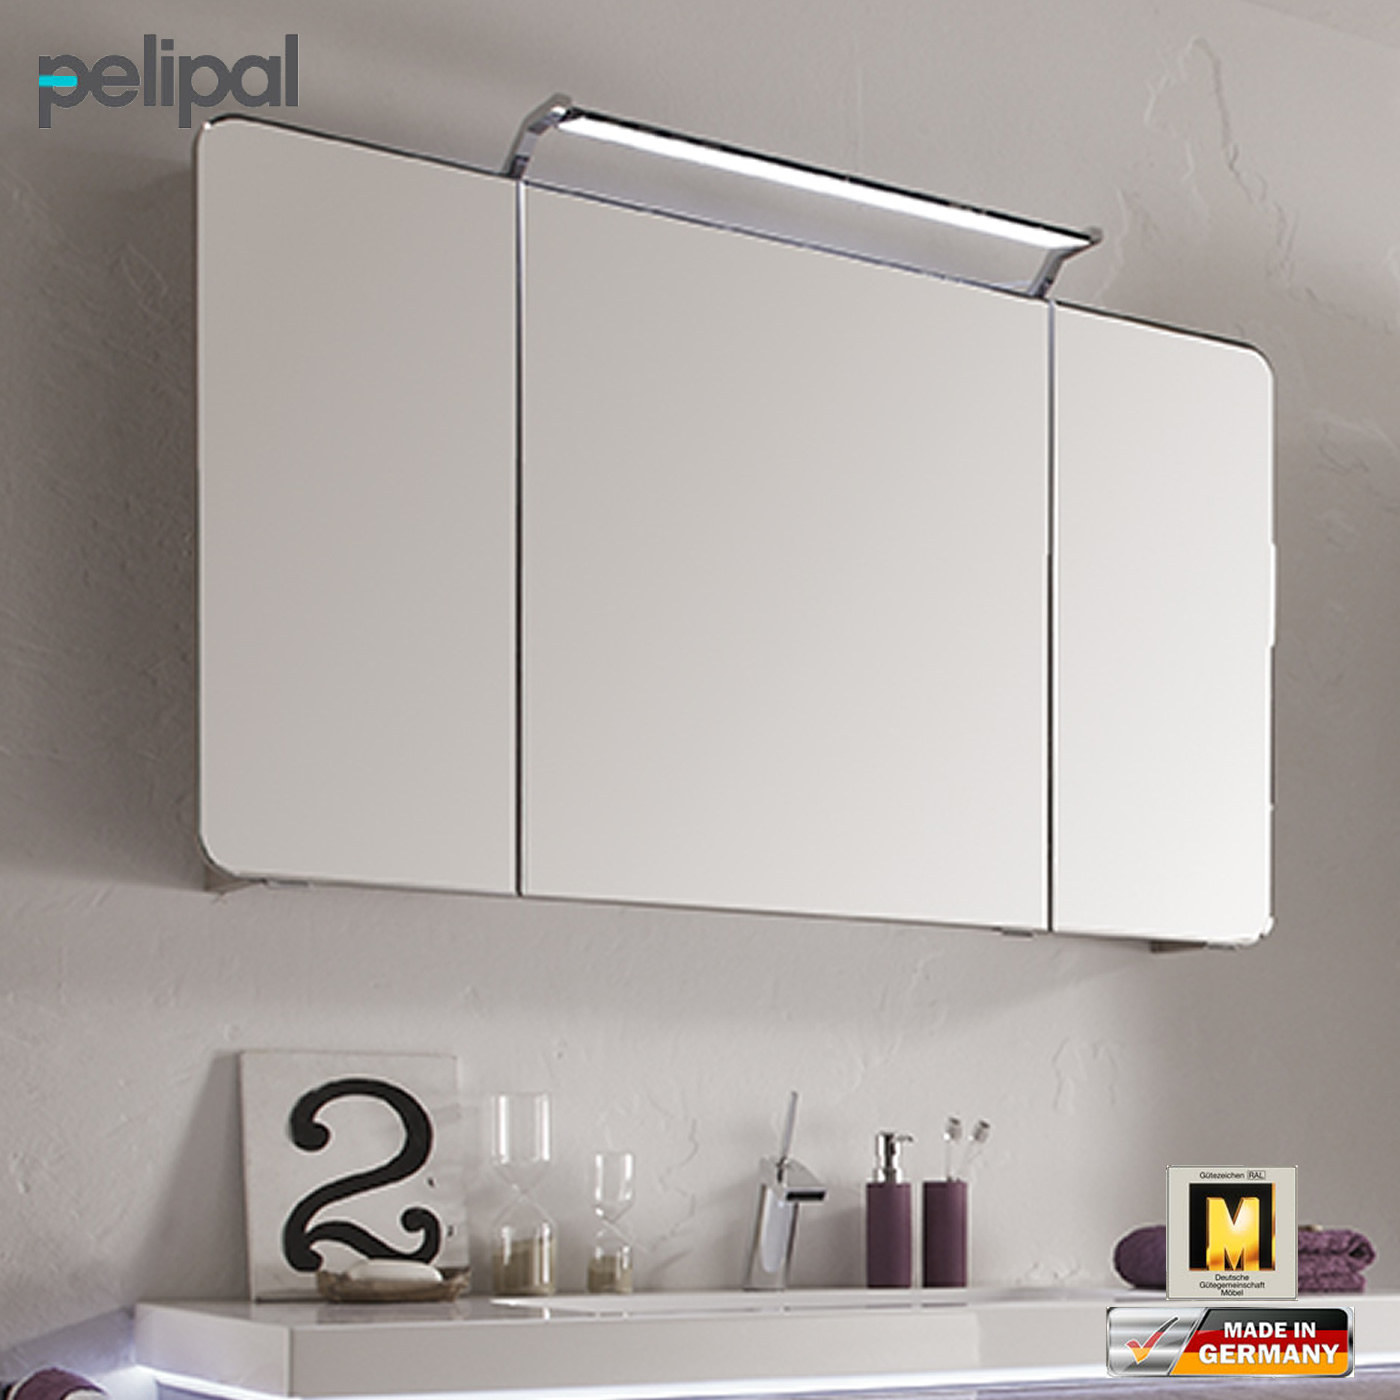 Pelipal Balto Spiegelschrank 120 cm mit 3 Türen | Impulsbad